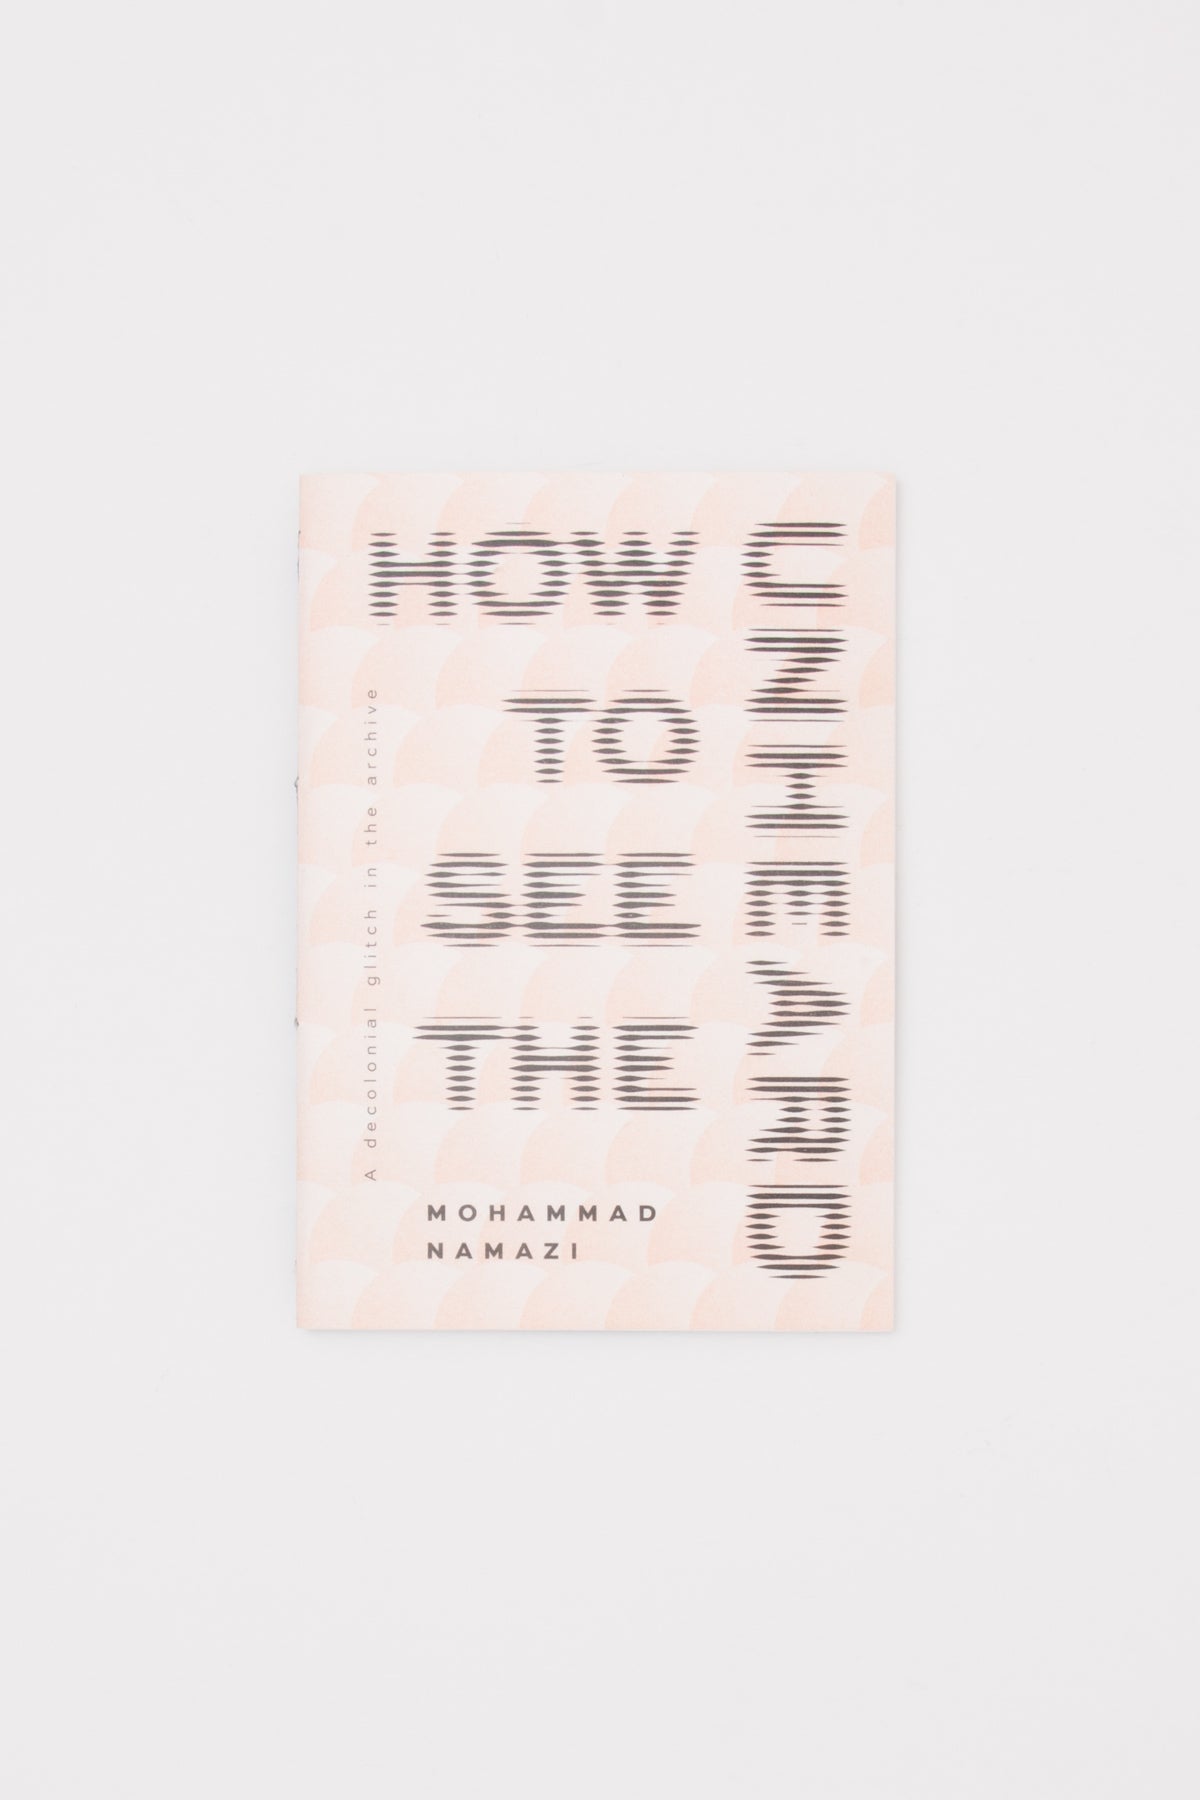 How to See the Unheard - Mohammad Namazi